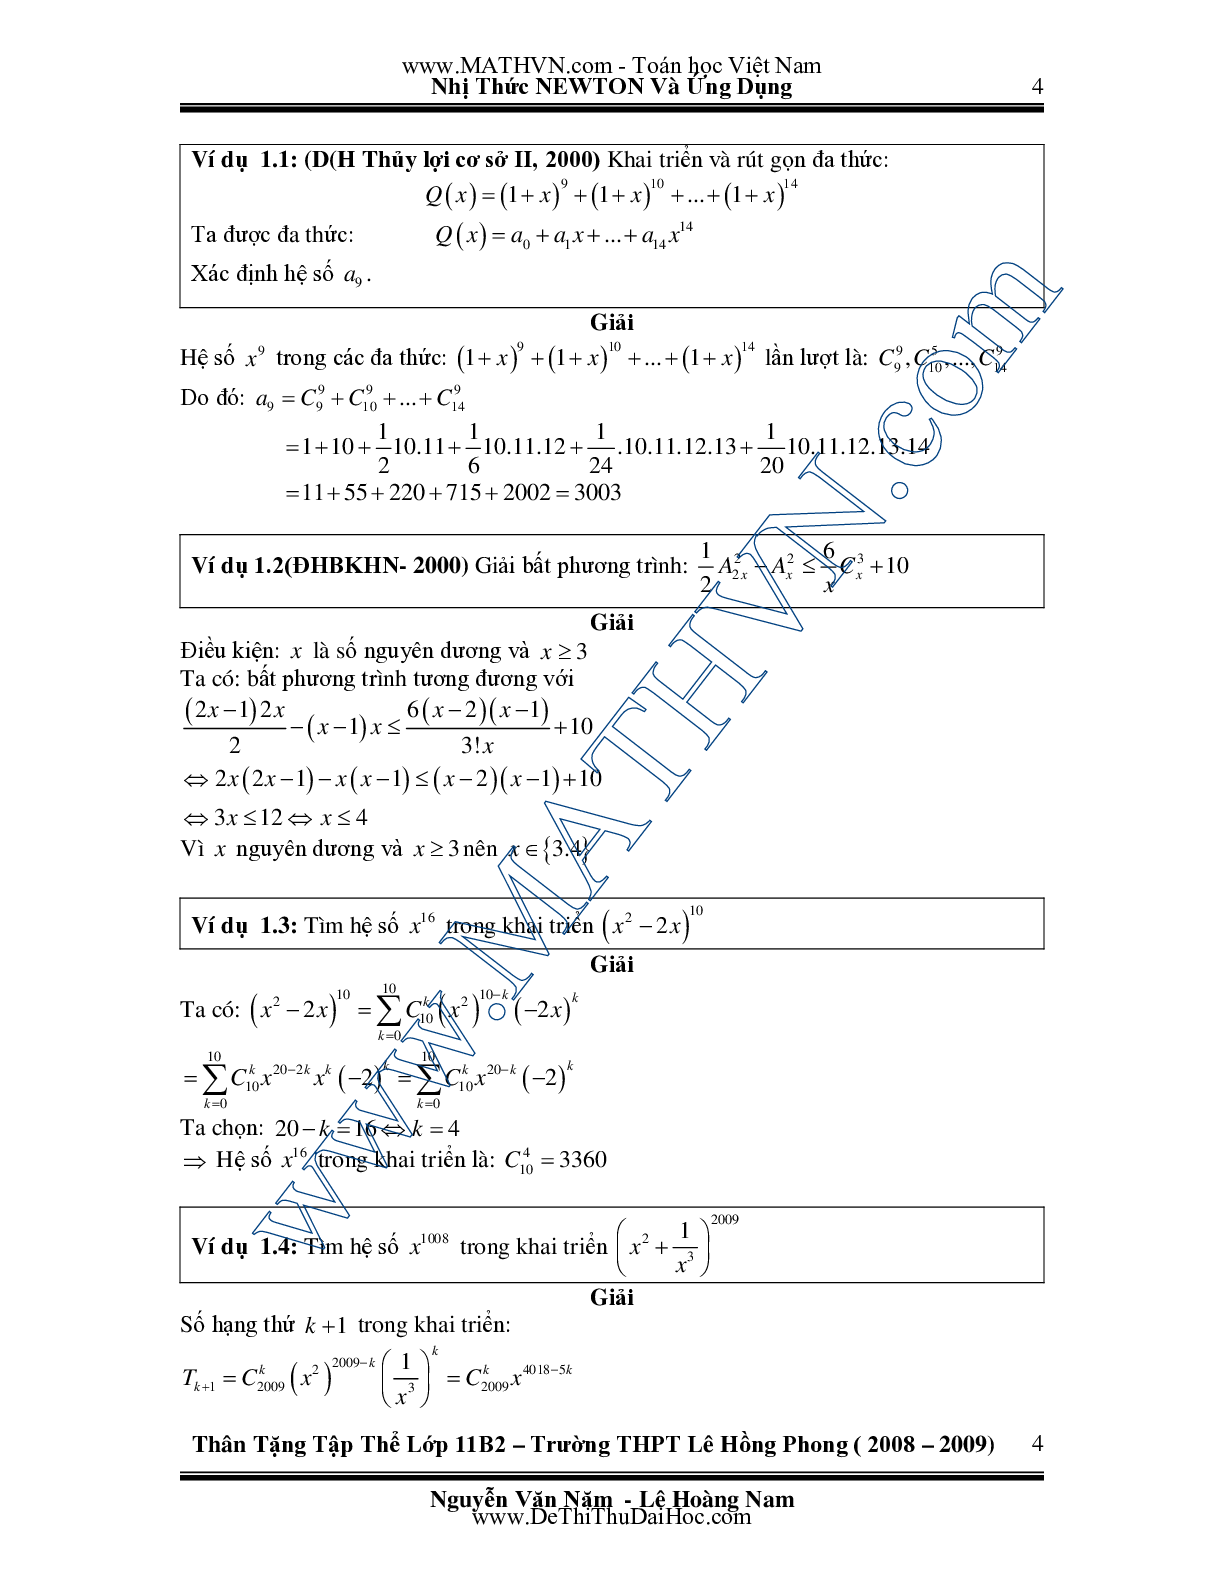 Chuyên đề Nhị thức Newton và ứng dụng môn Toán lớp 11 (trang 4)